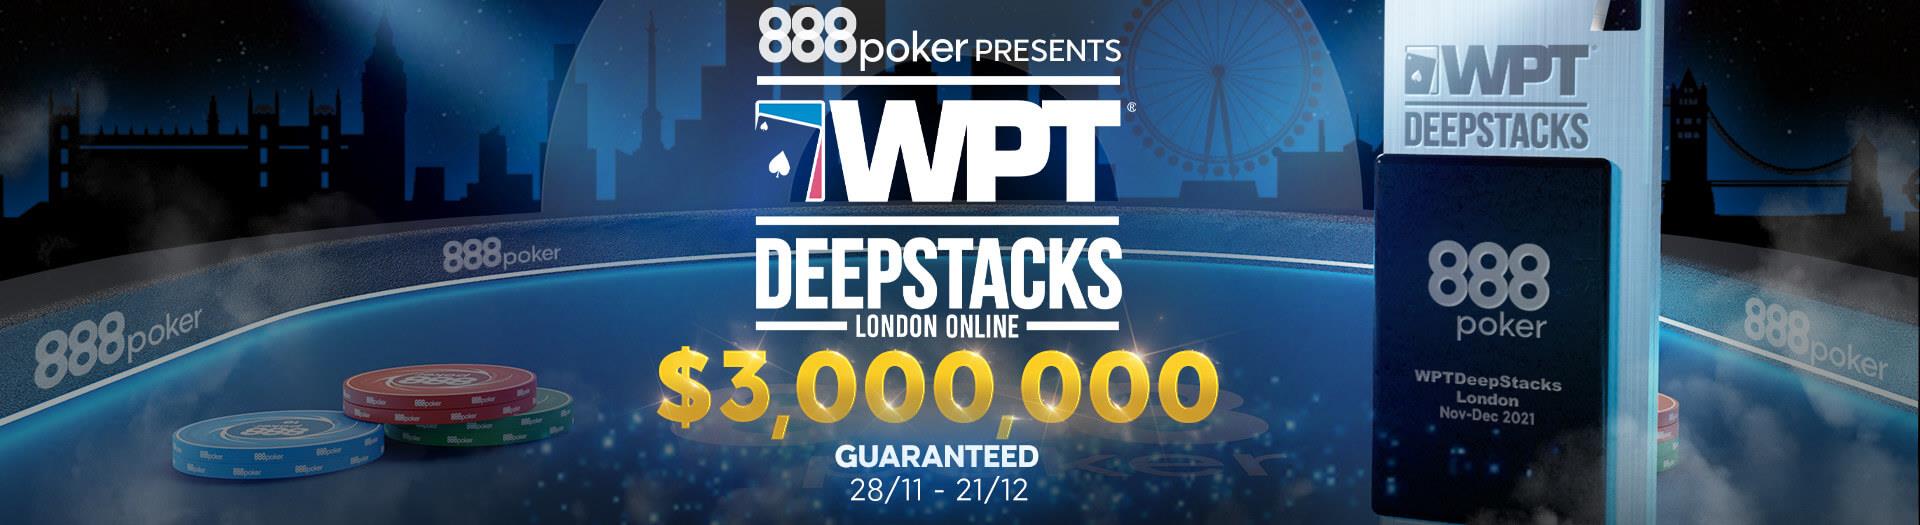 WPT Deepstacks London Online 2021